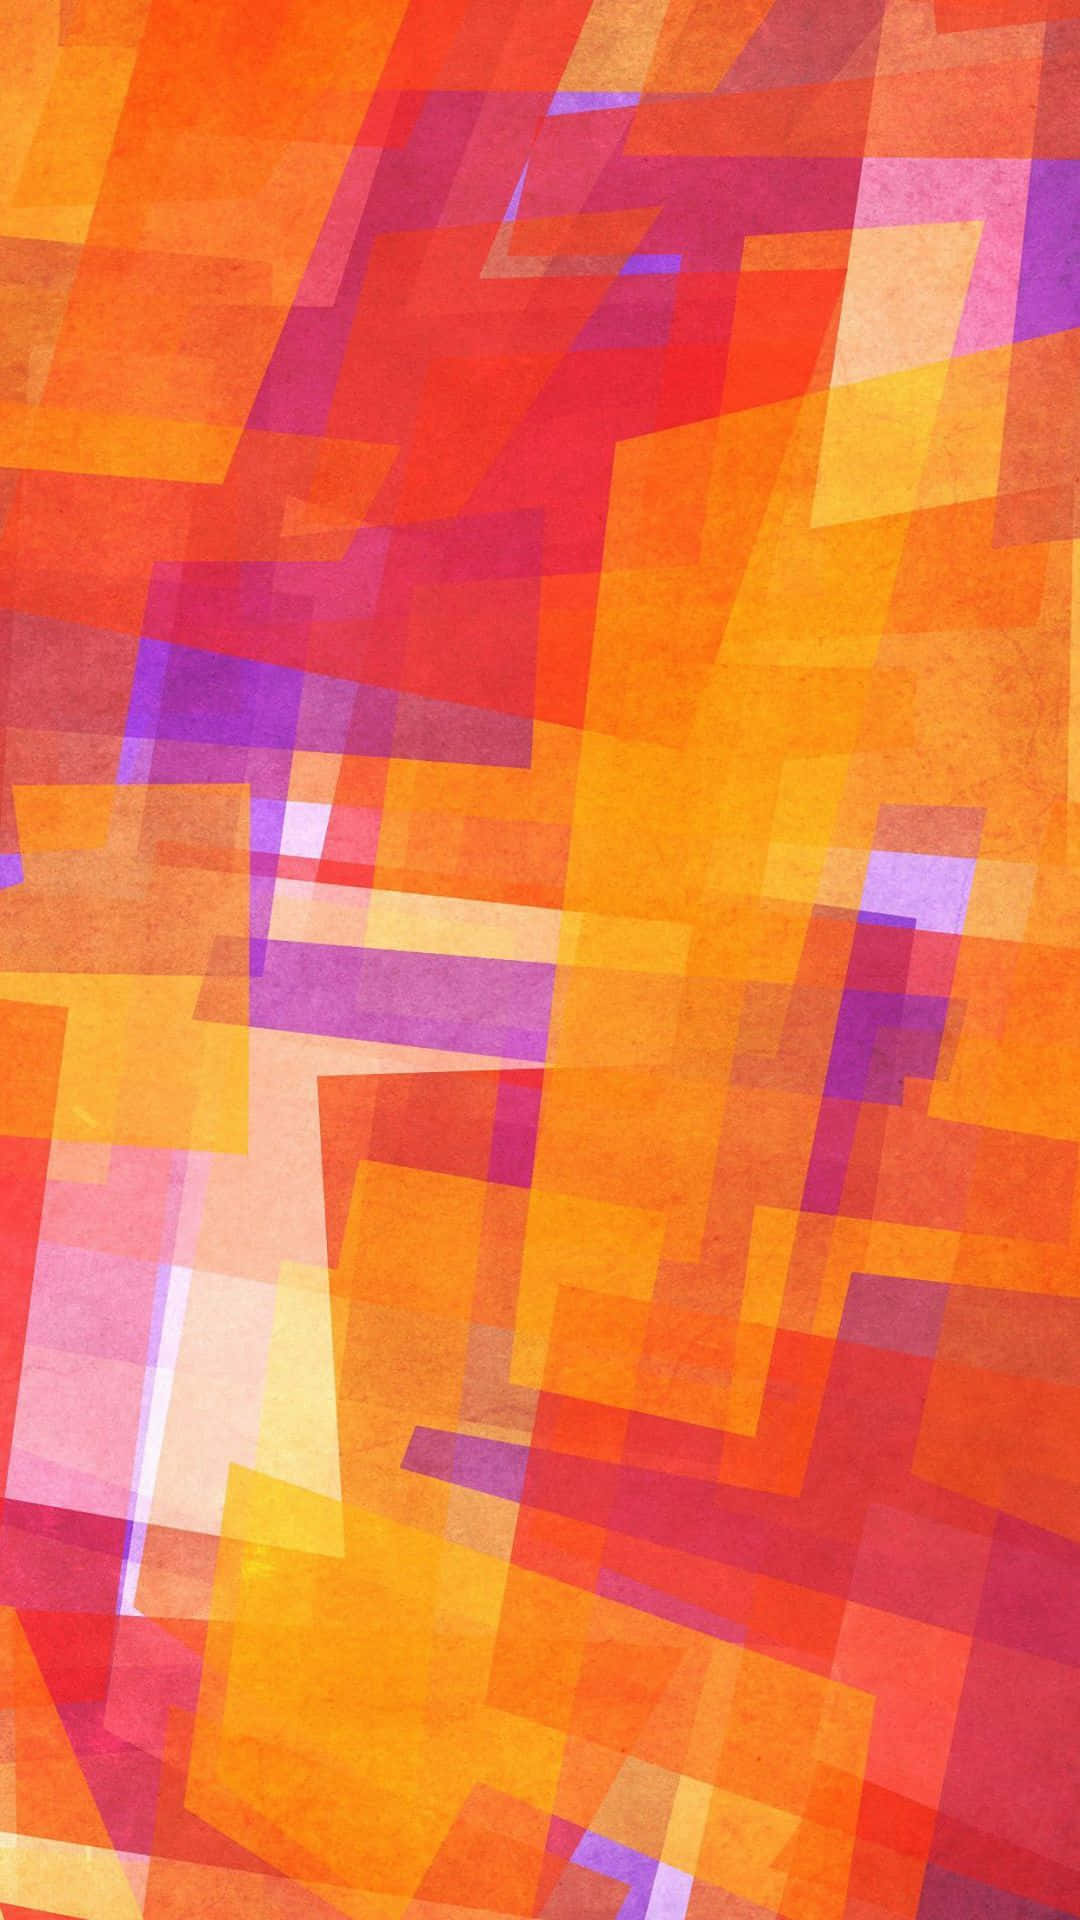 Fondode Pantalla Hd Abstracto De Cubismo En Colores Morado Y Naranja Para Teléfono Móvil. Fondo de pantalla